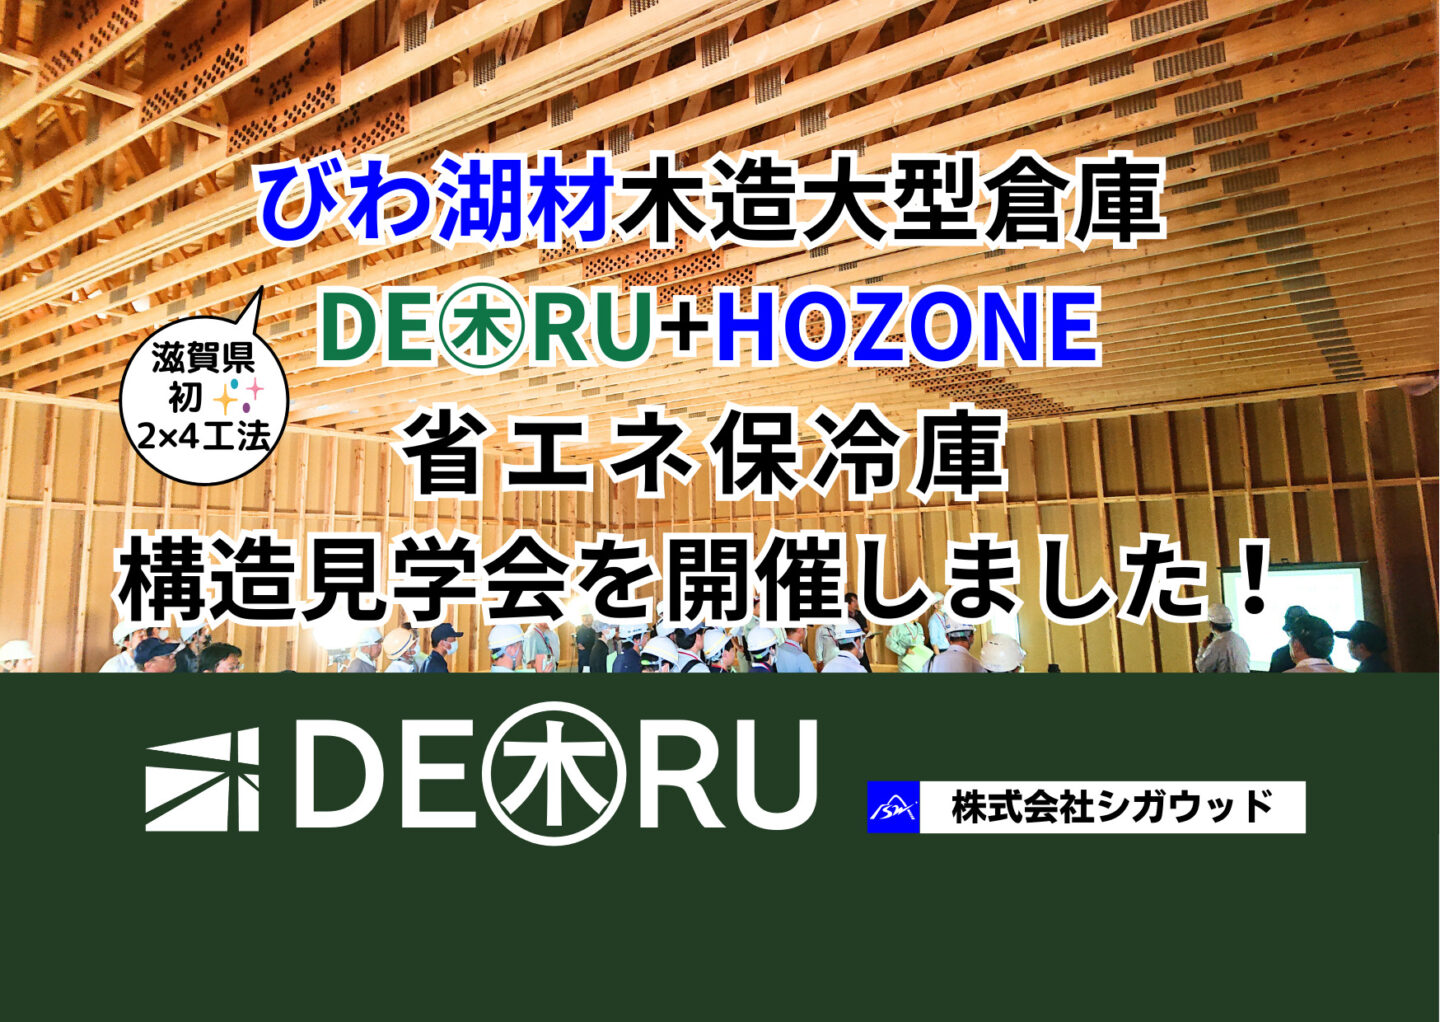 「　滋賀県初のびわ湖材木造大型倉庫・DE㊍RU+HOZONE省エネ保冷庫構造見学会　」を開催しました